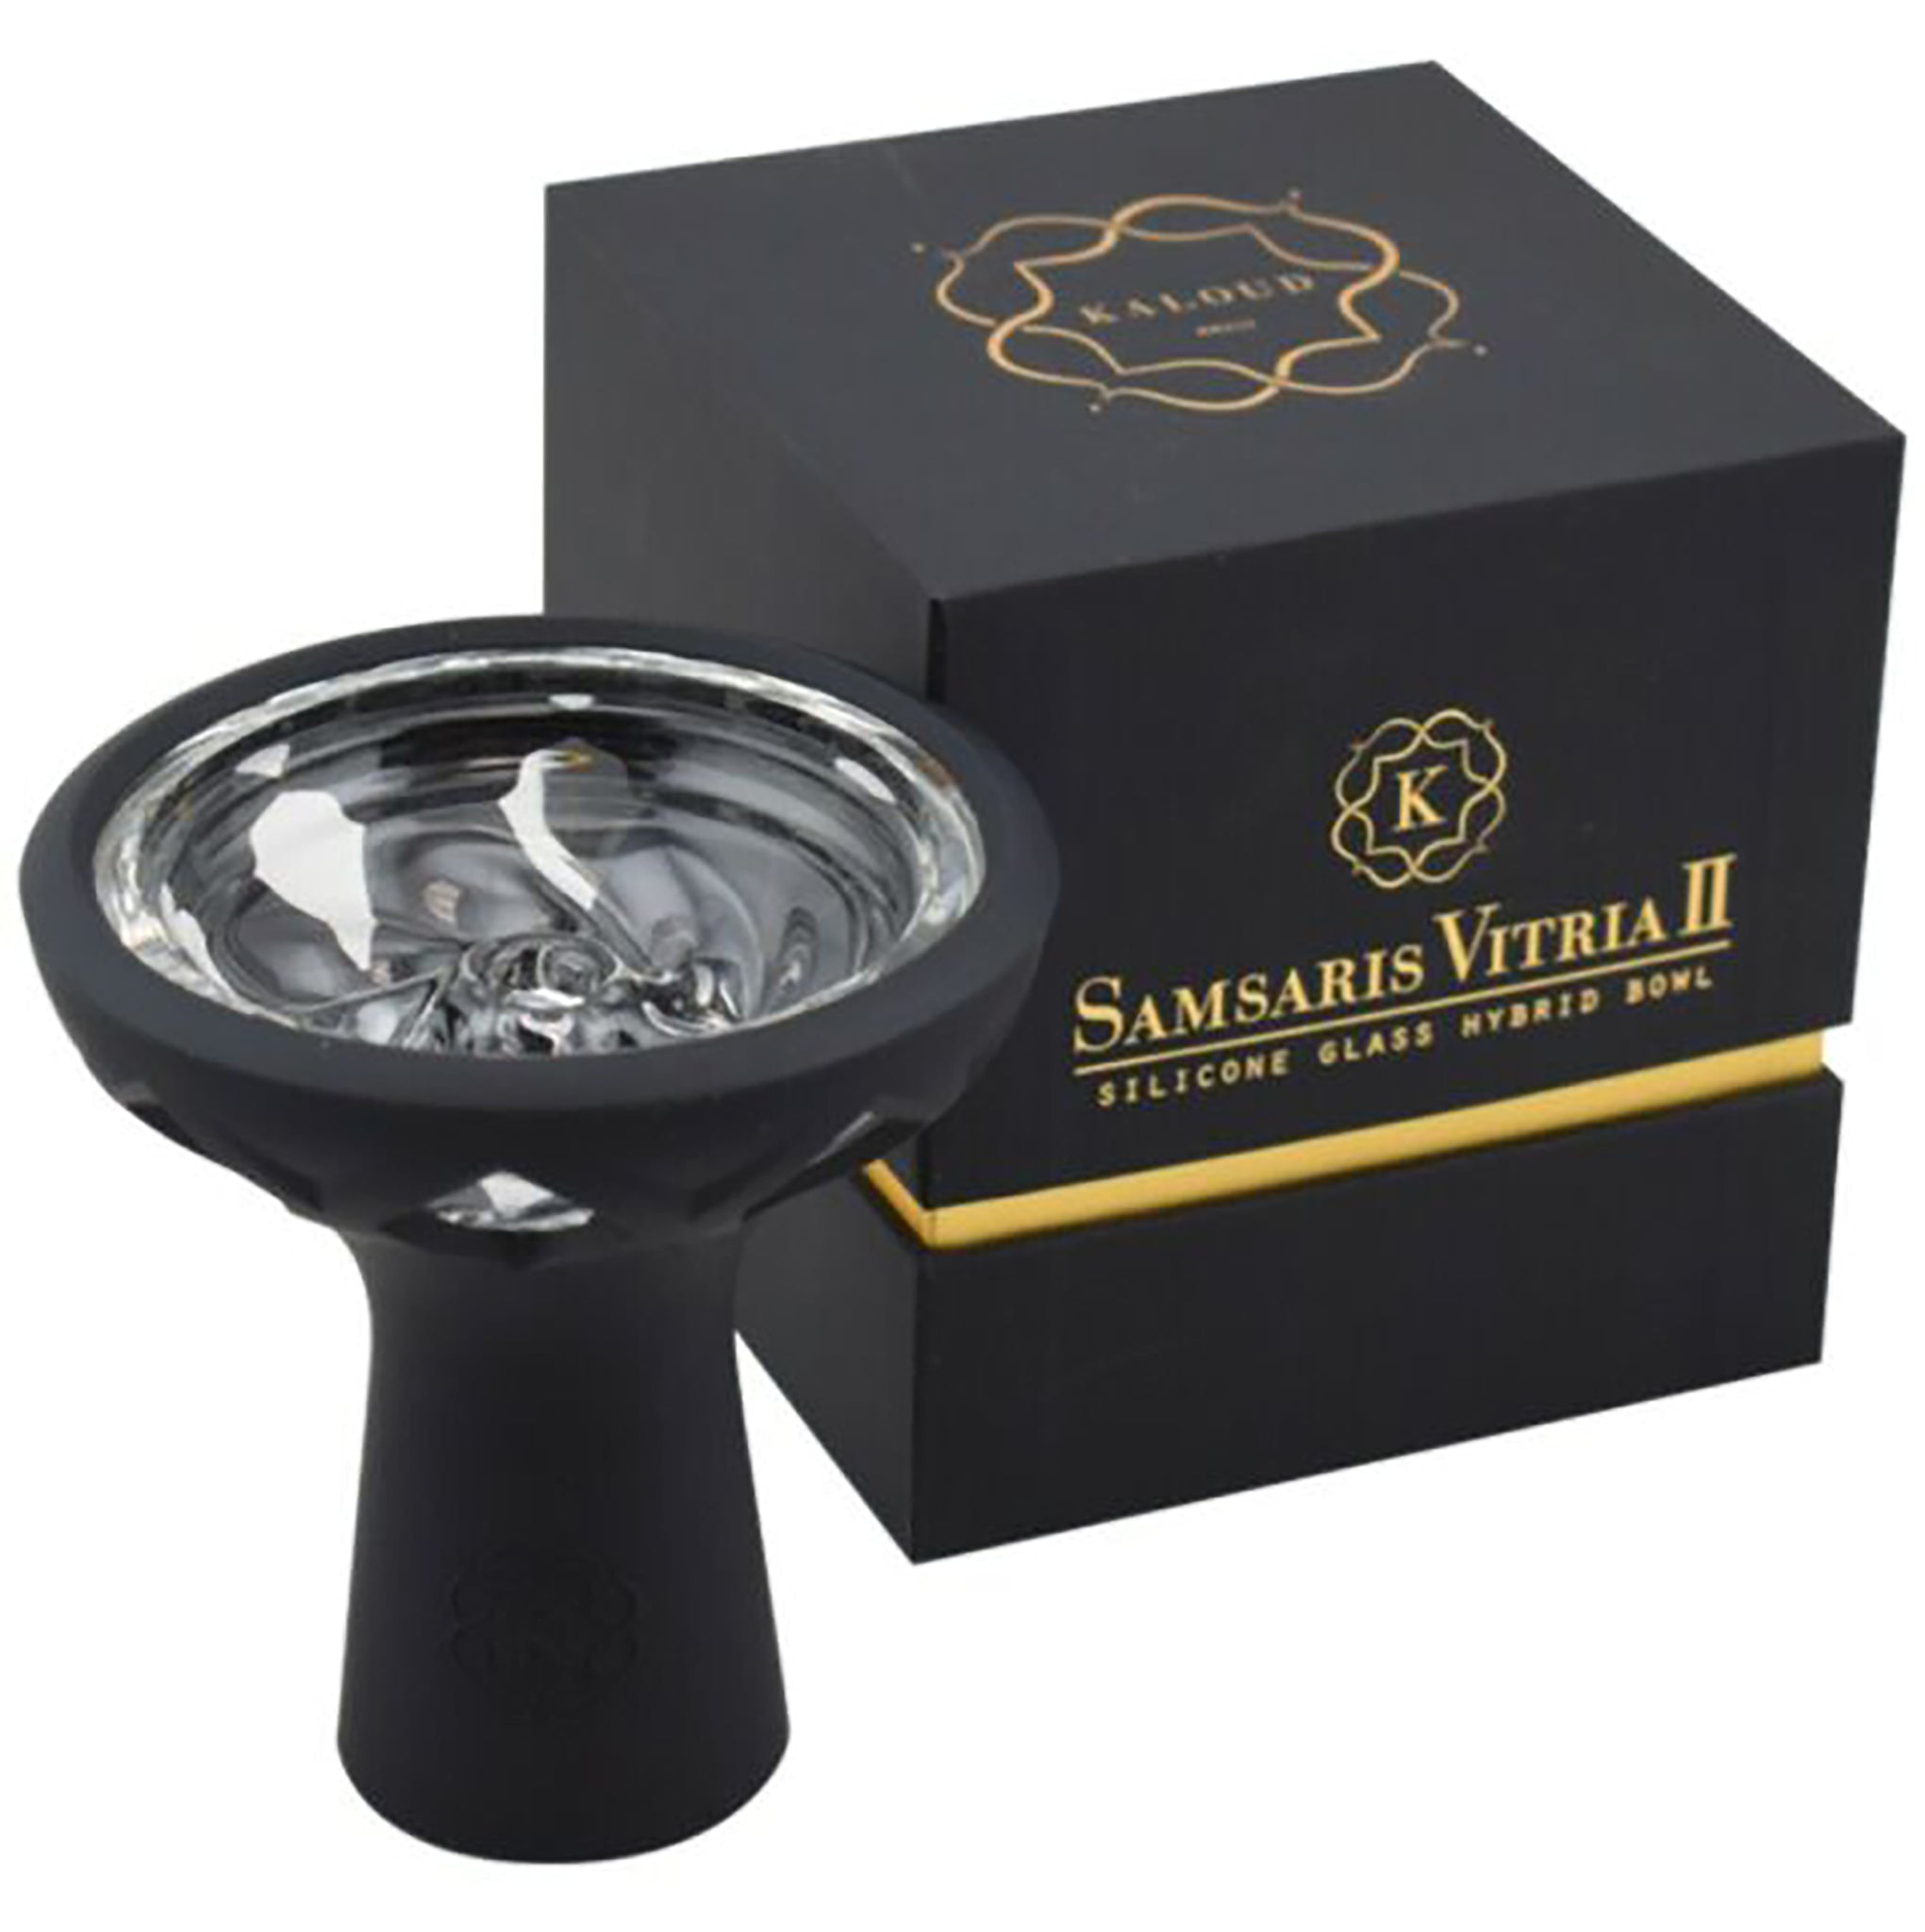 Kaloud Samsaris Vitria II - Silicone Glass Hybrid Bowl